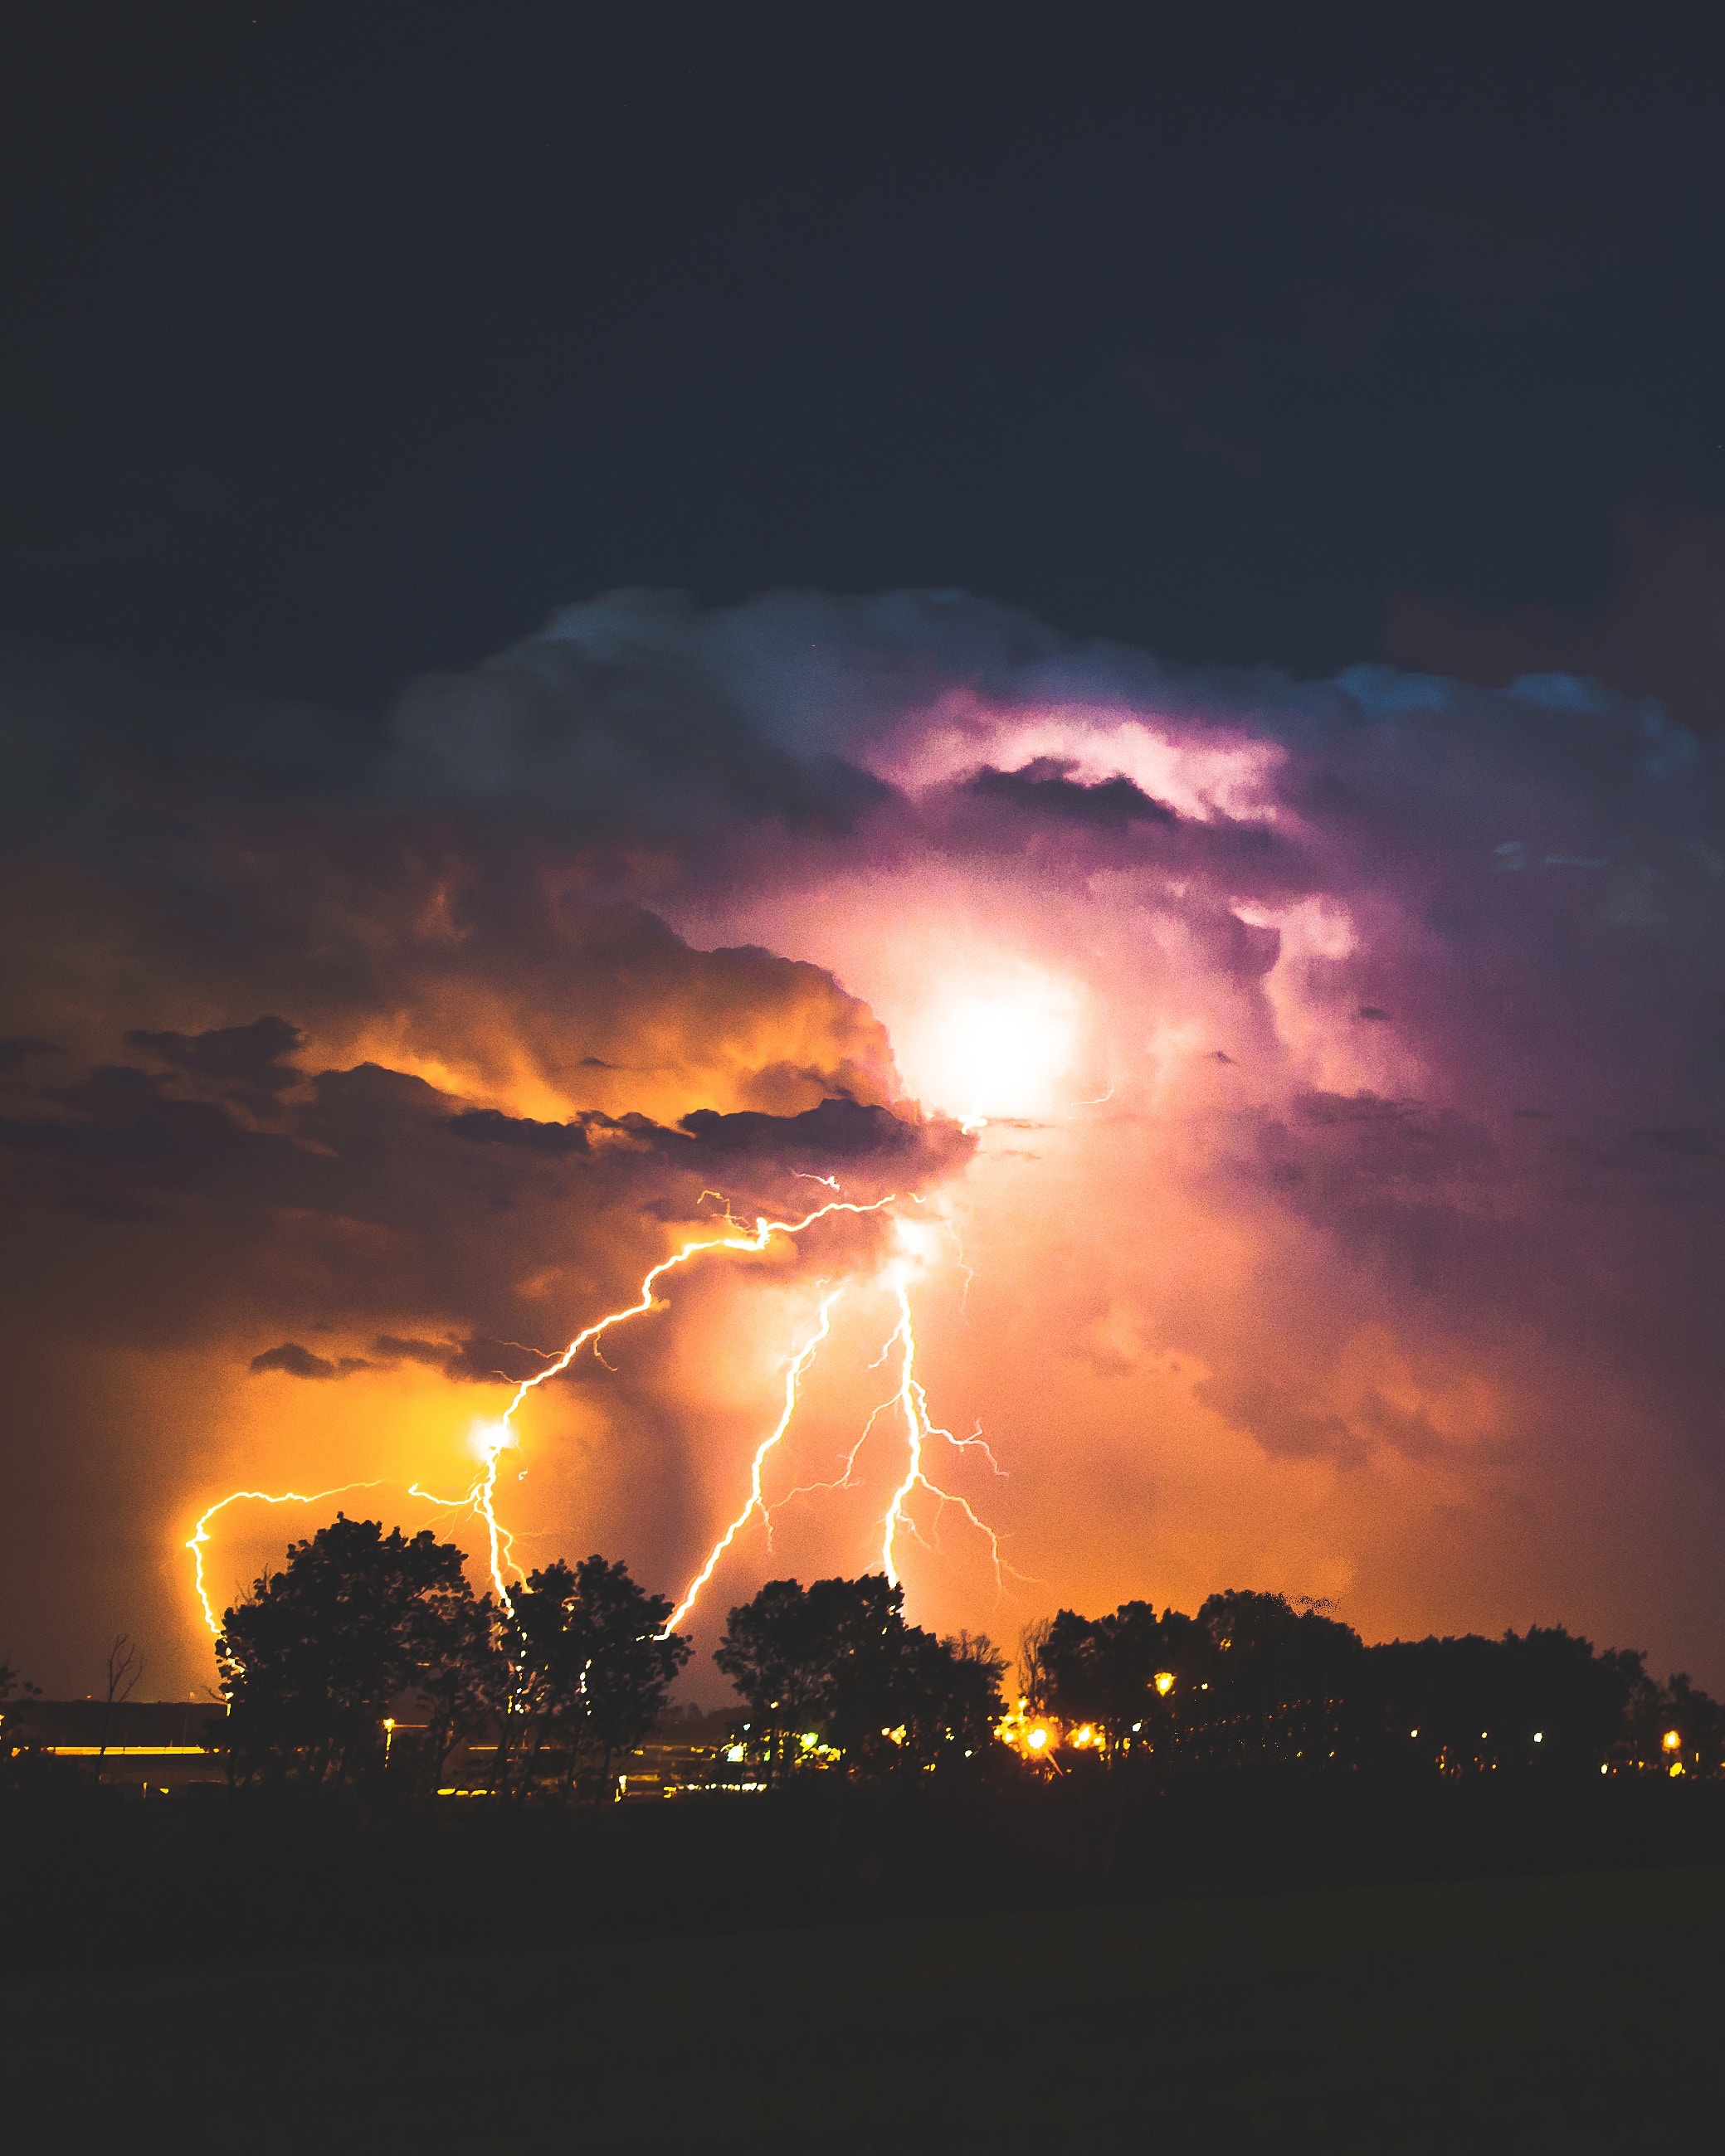 Lightning bolts at night